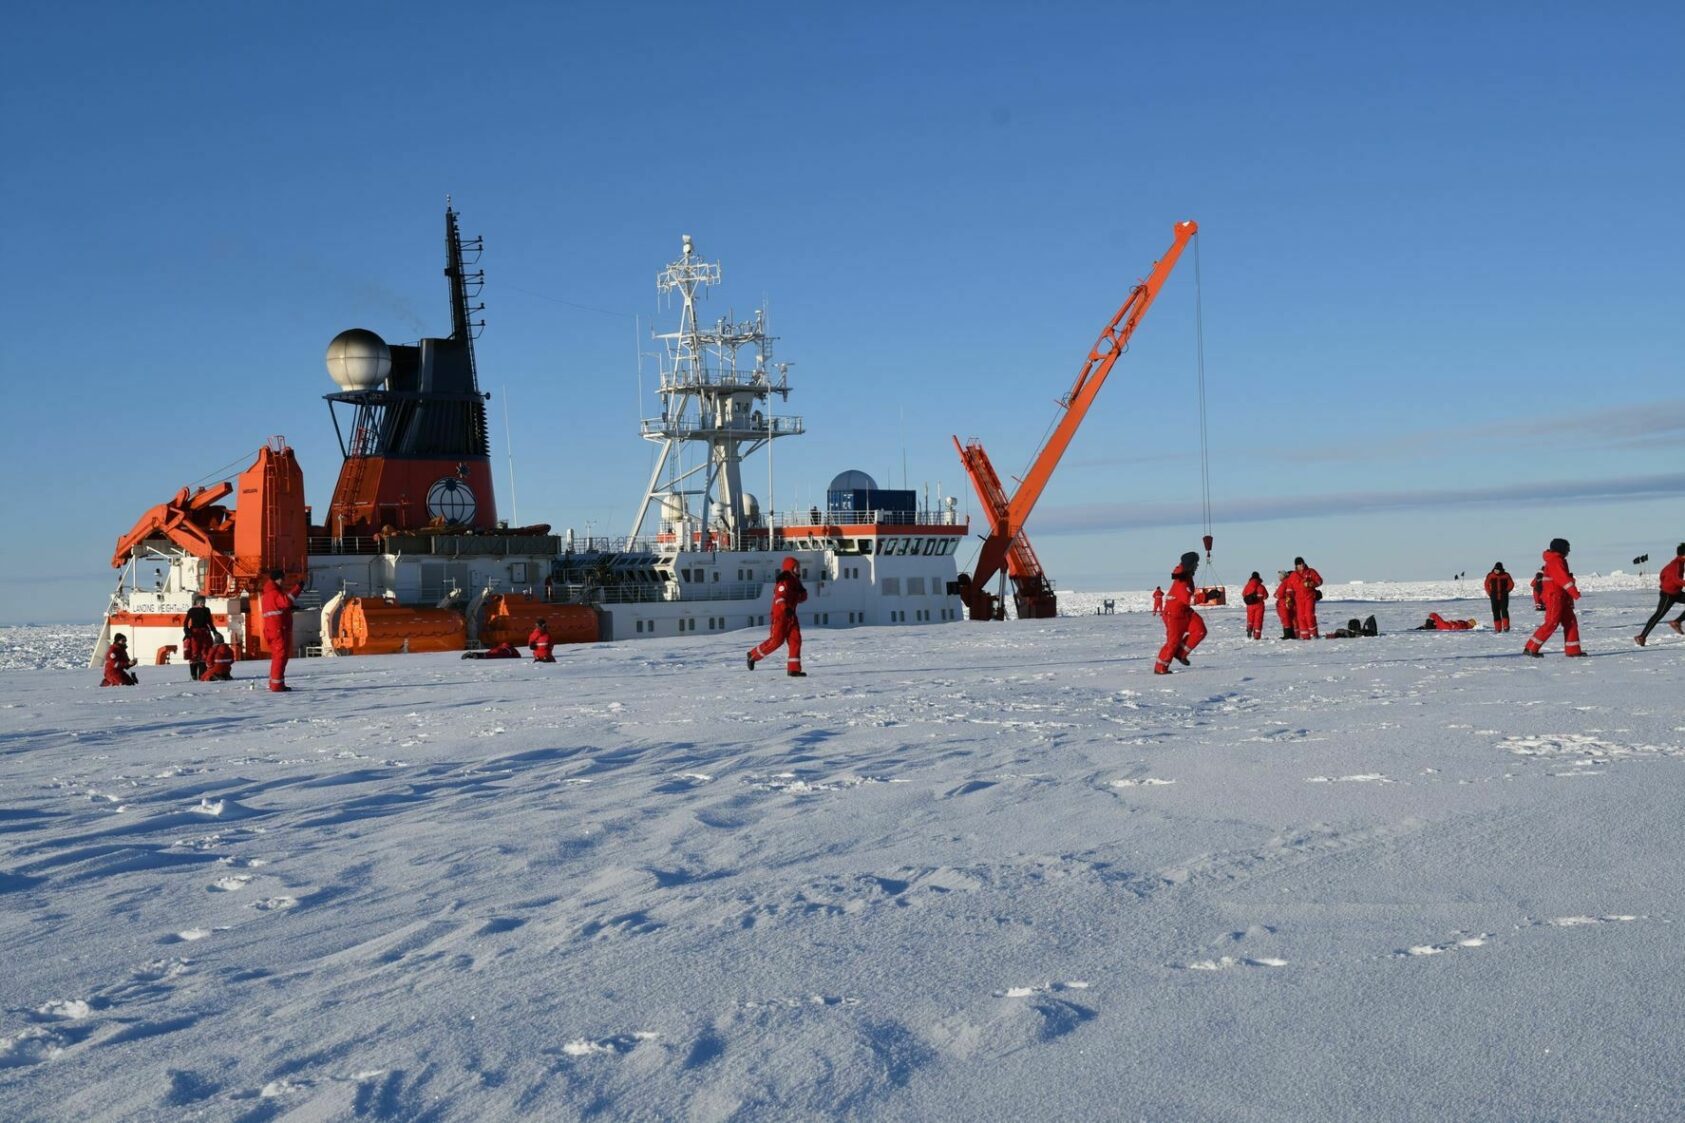 Foto: Svein Østerhus / NORCE, Landlov for forskere og mannskap på Ekstrømisen ved den tyske basen Neumayer, Ankret opp ved isen so 2021, , 